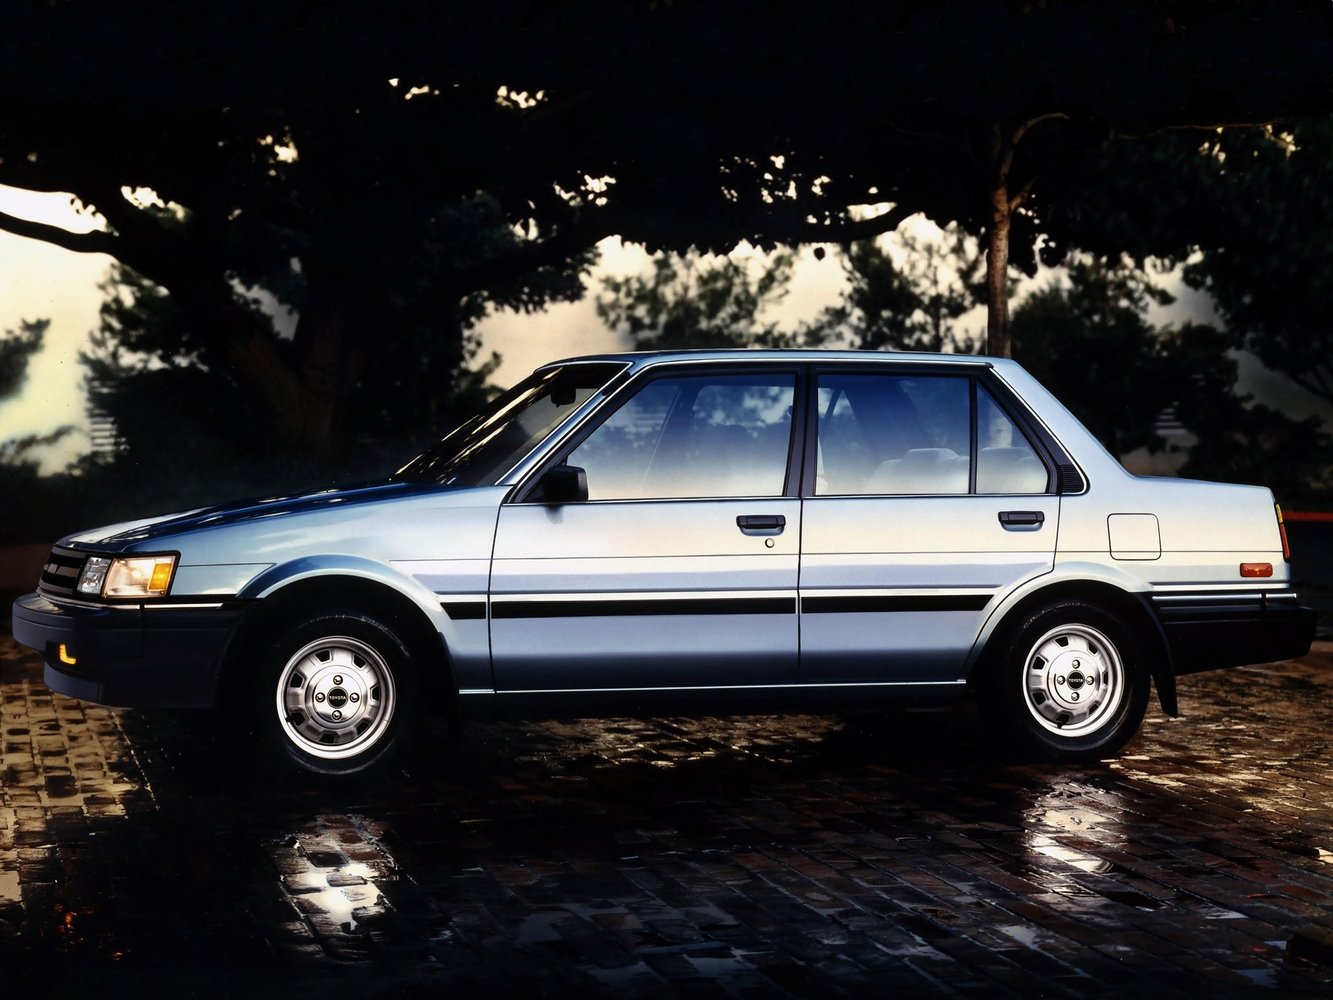 седан Toyota Corolla 1983 - 1987г выпуска модификация 1.3 AT (75 л.с.)